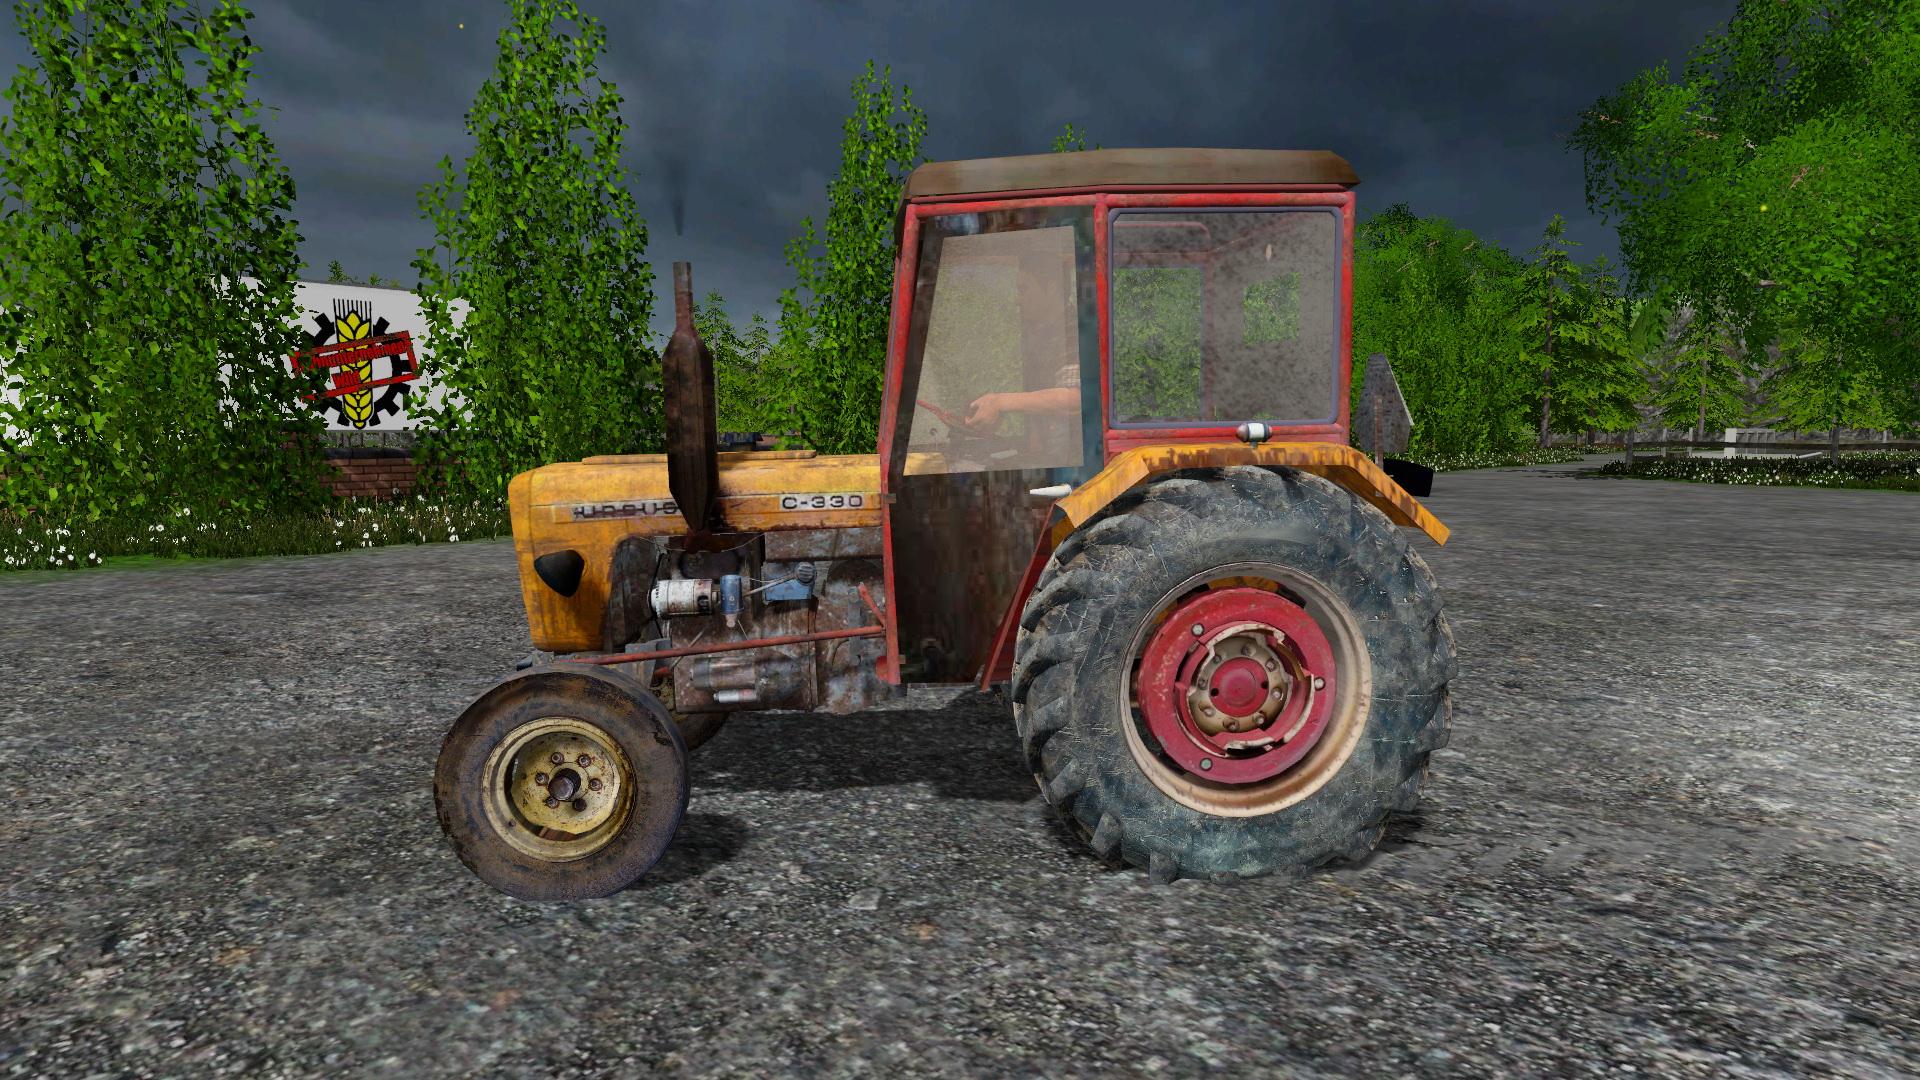 Ursus C 330 V10 By Heros • Farming Simulator 19 17 22 Mods Fs19 17 22 Mods 4553